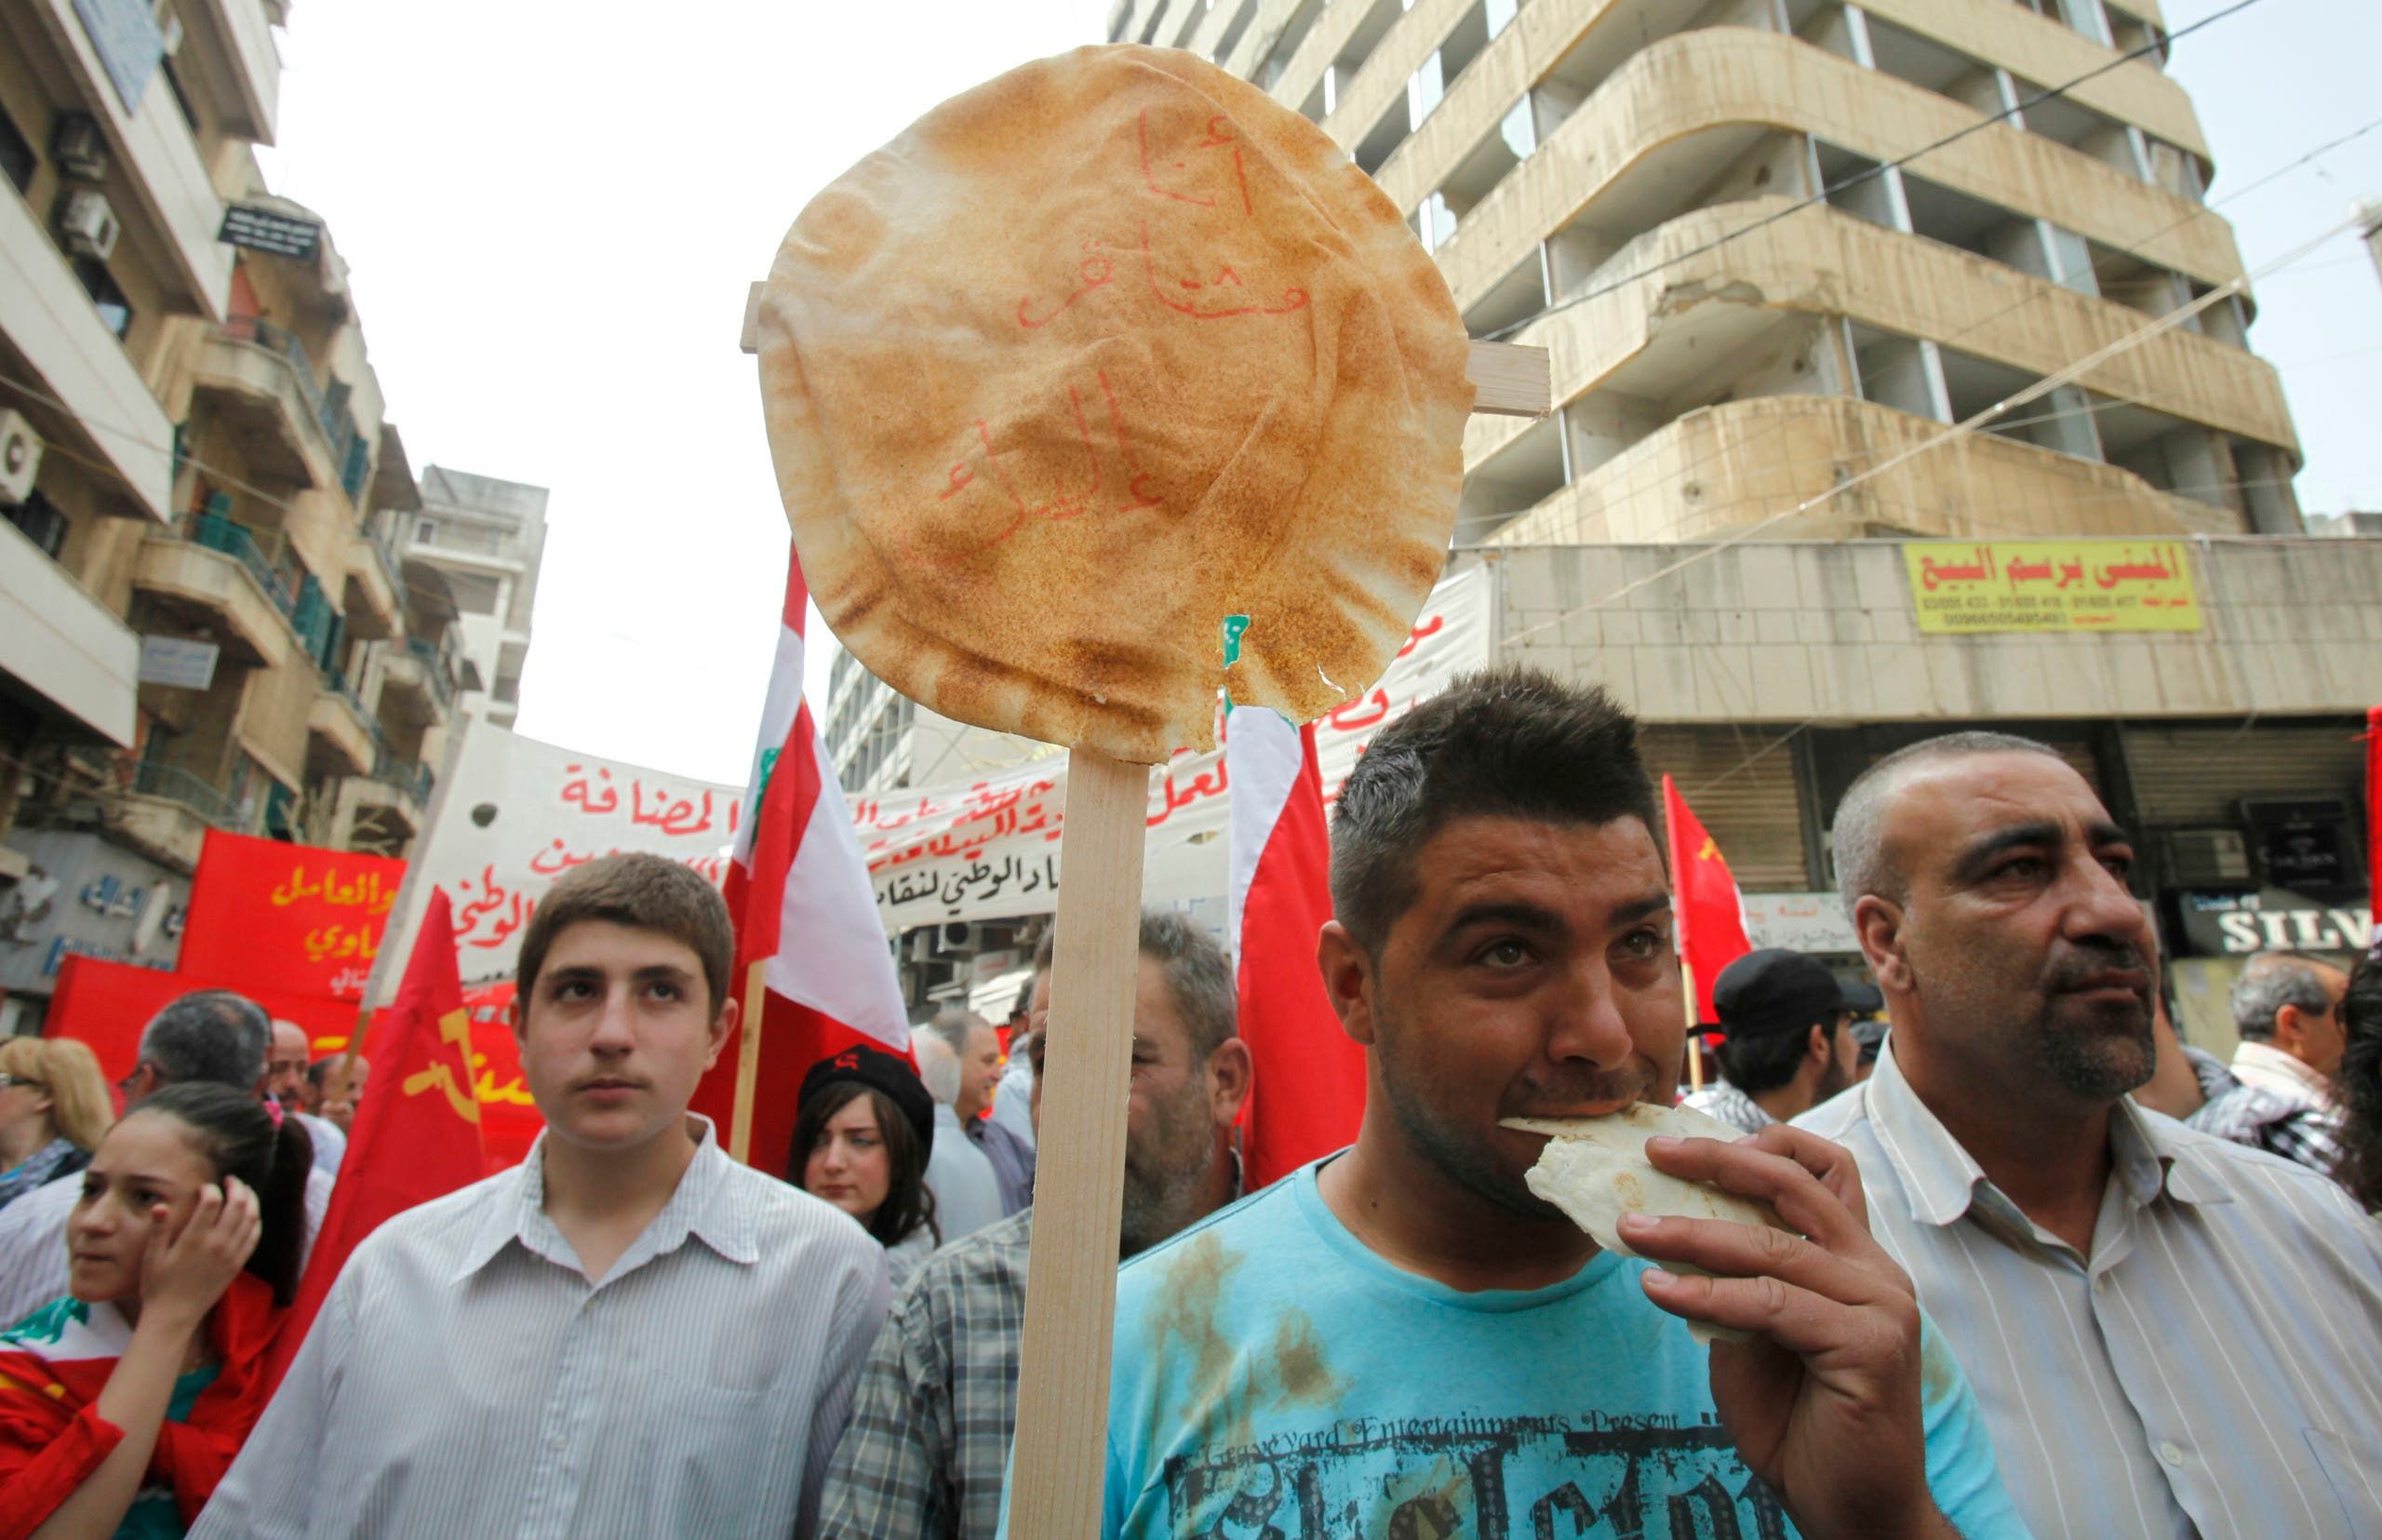 لبناني يتظاهر حاملا رغيف خبر للتنديد بالأزمة المعيشية